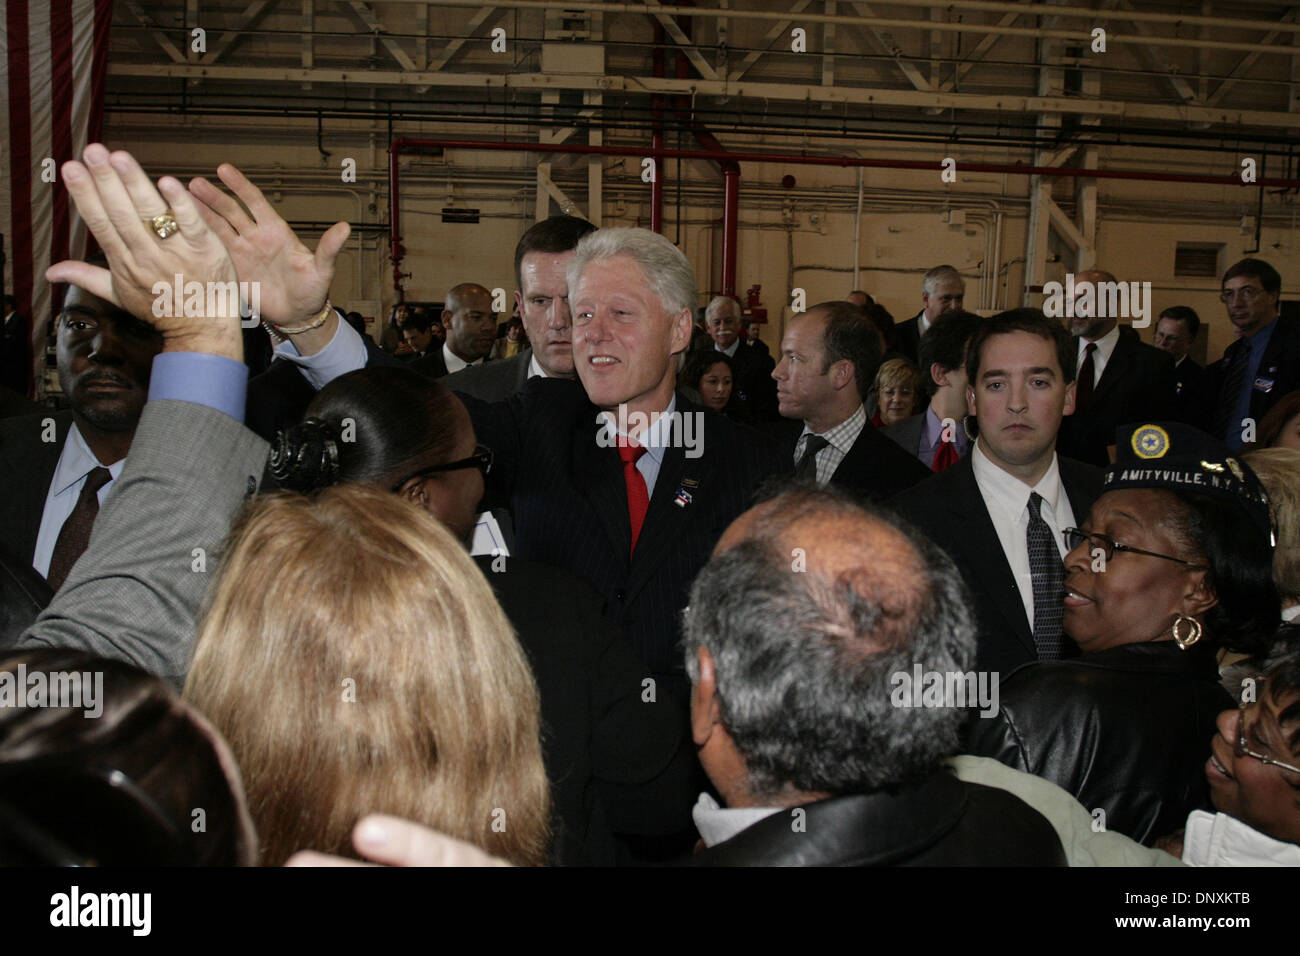 Oct 26, 2006 - Farmingdale, New York, Stati Uniti - Bill Clinton assiste rally di campagna per i candidati democratici. (Credito Immagine: © Kirk condili/ZUMA Press) Foto Stock